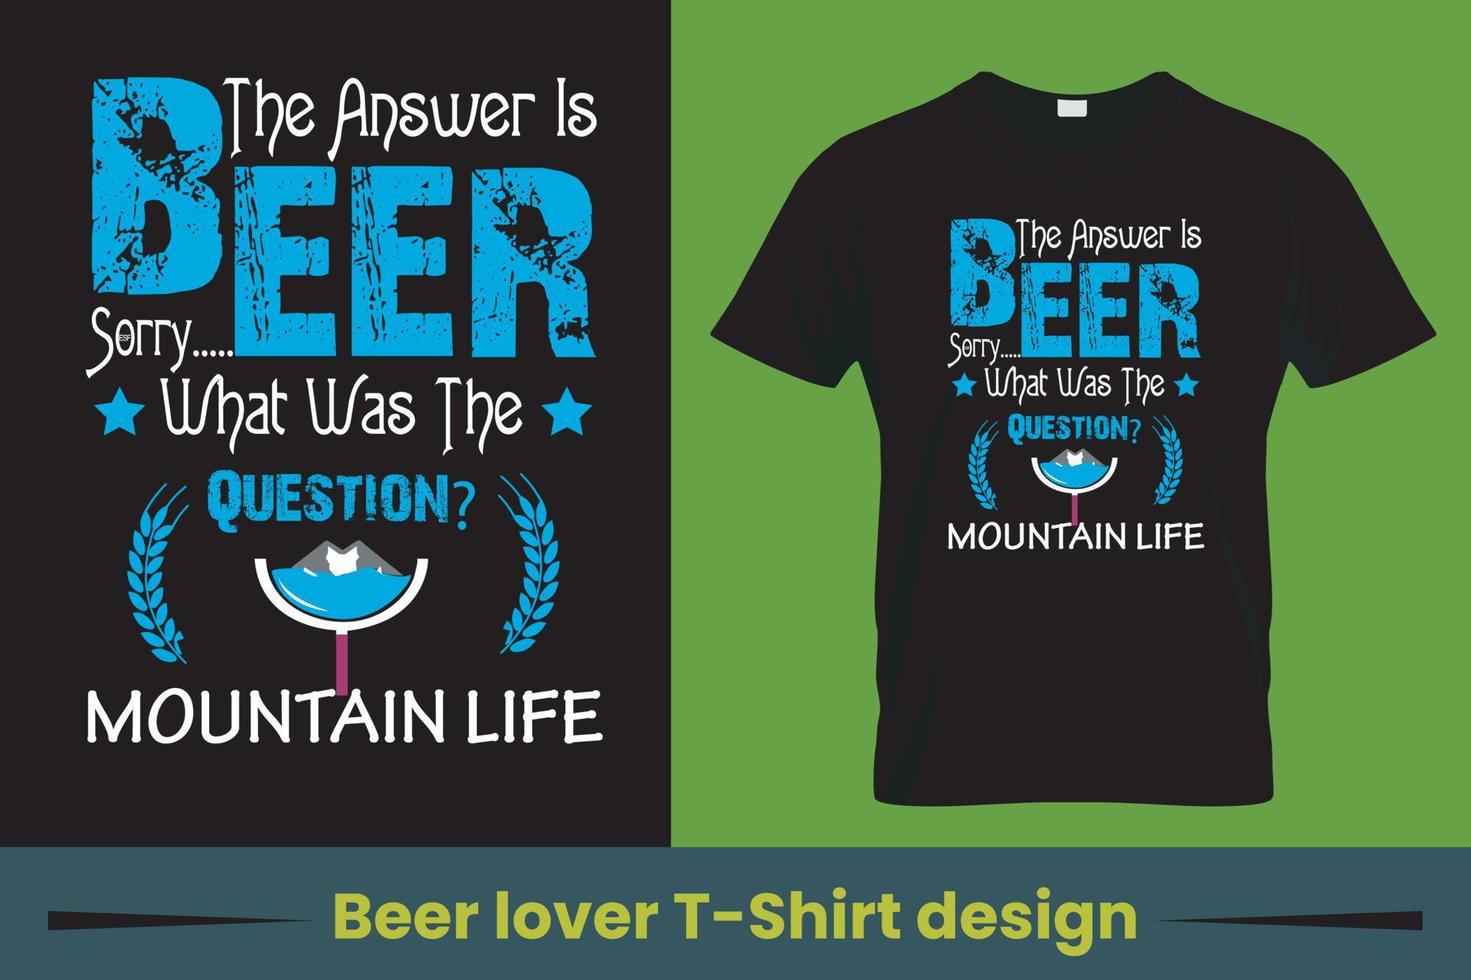 design de camiseta de amante de cerveja de vinho, design de camiseta engraçada de amantes de cerveja segurando copo de cerveja, adequado para qualquer vetor profissional de site de cápsulas